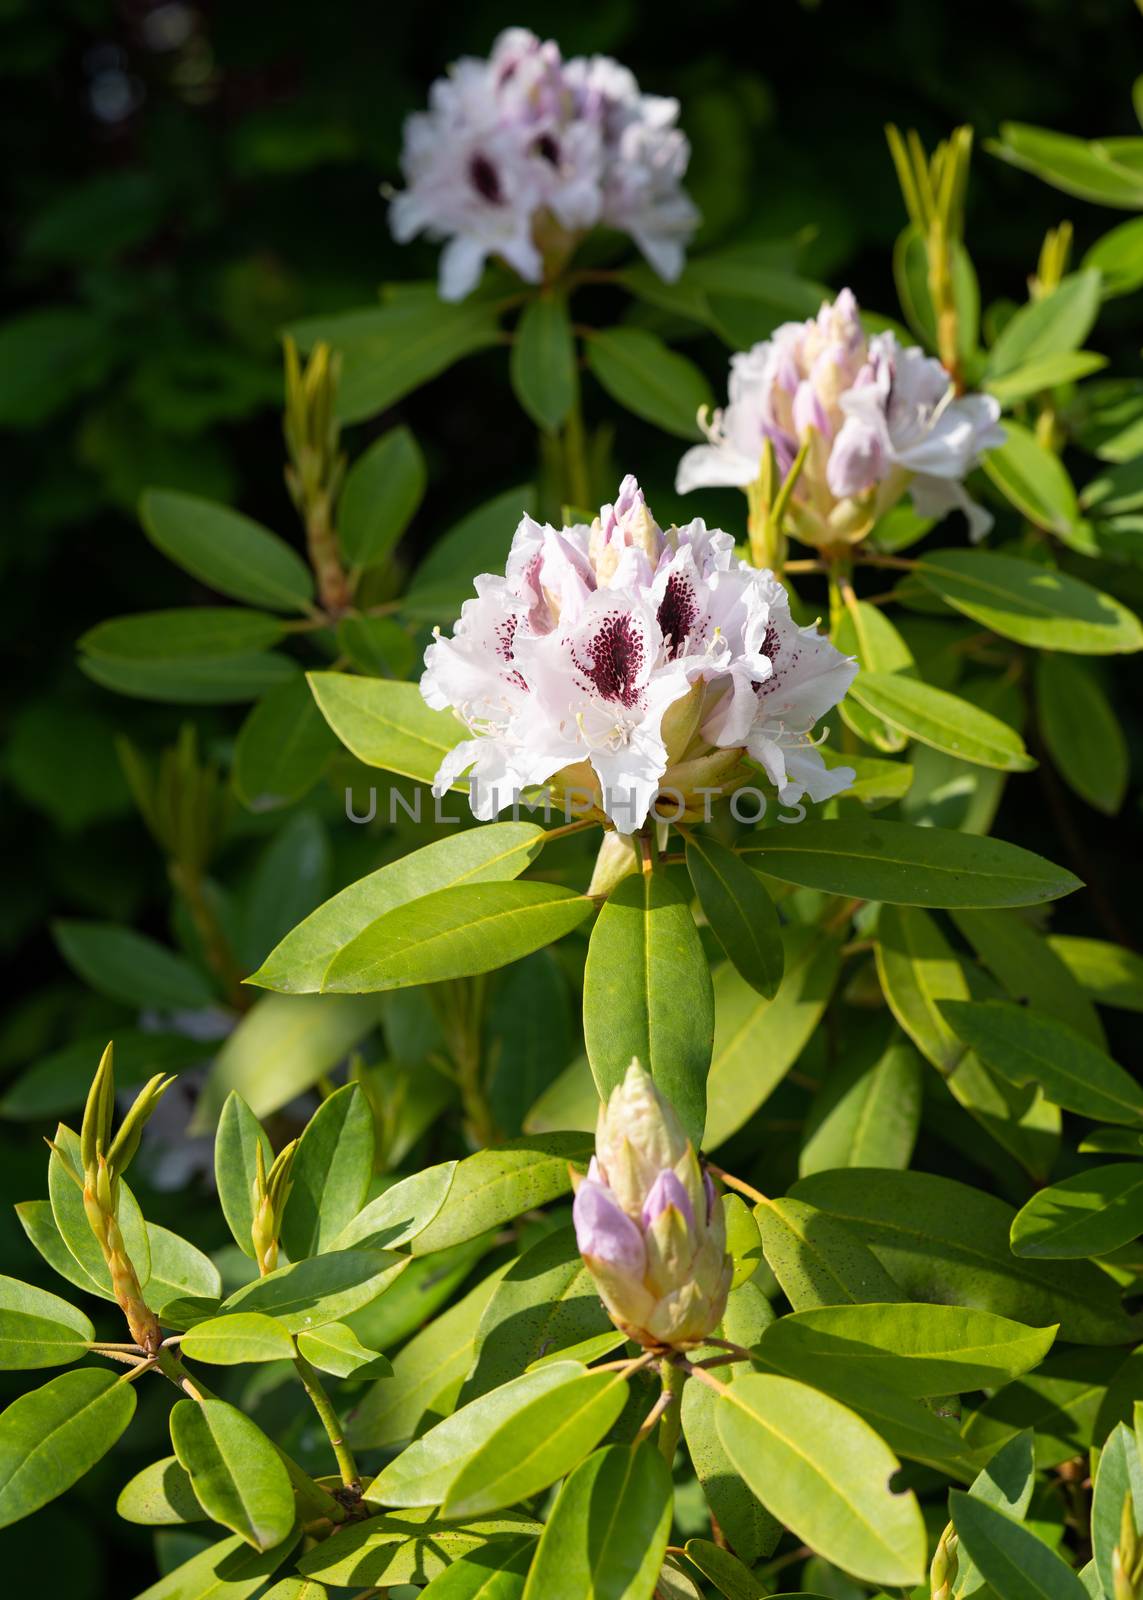 Rhododendron Hybrid Calsap, Rhododendron hybrid by alfotokunst